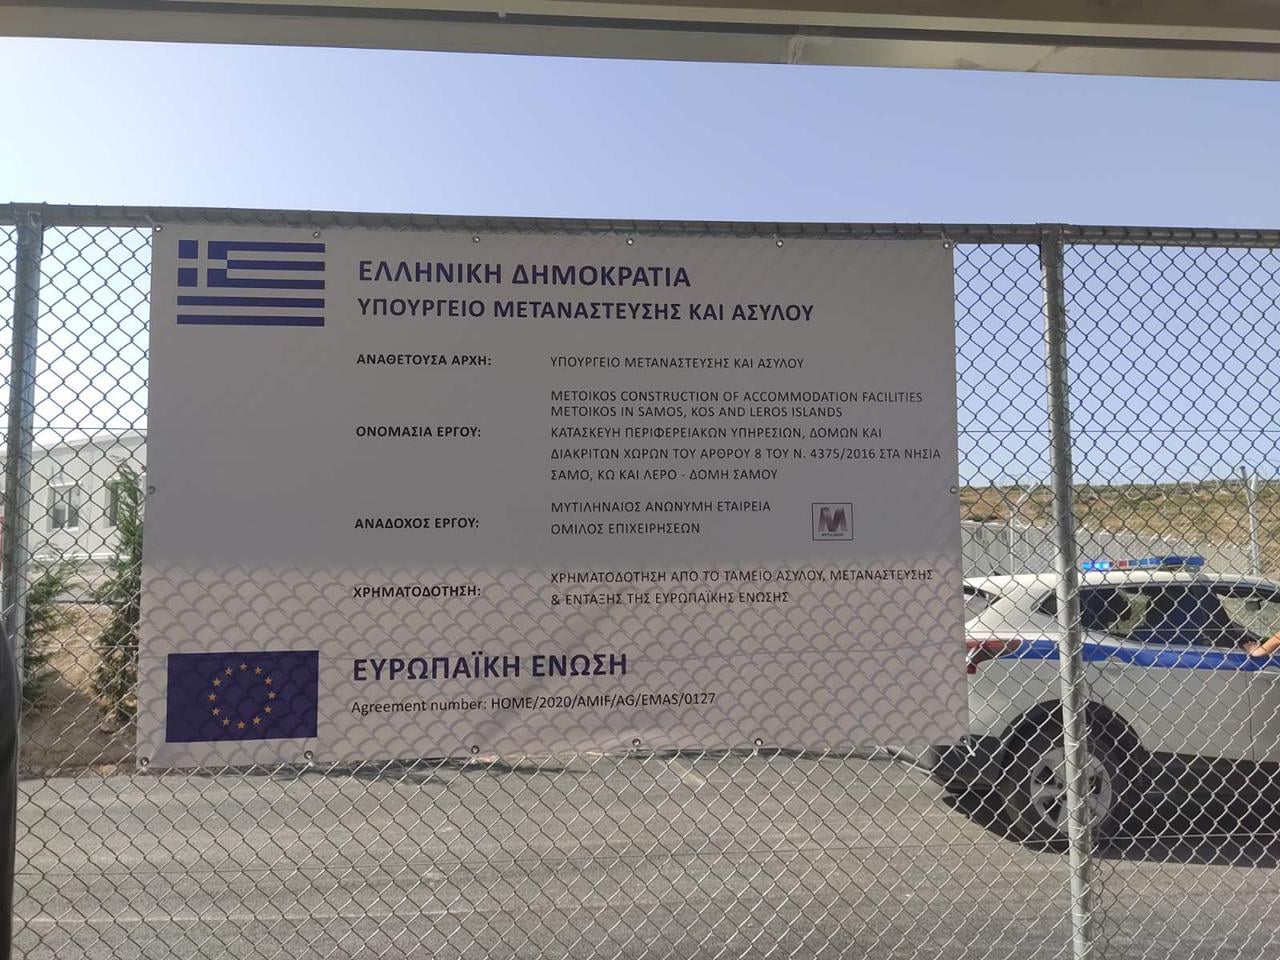 Σάμος: Εγκαινιάσθηκε το νέο ΚΥΤ  από τον Υπουργό Μετανάστευσης και Ασύλου Νότη Μηταράκη